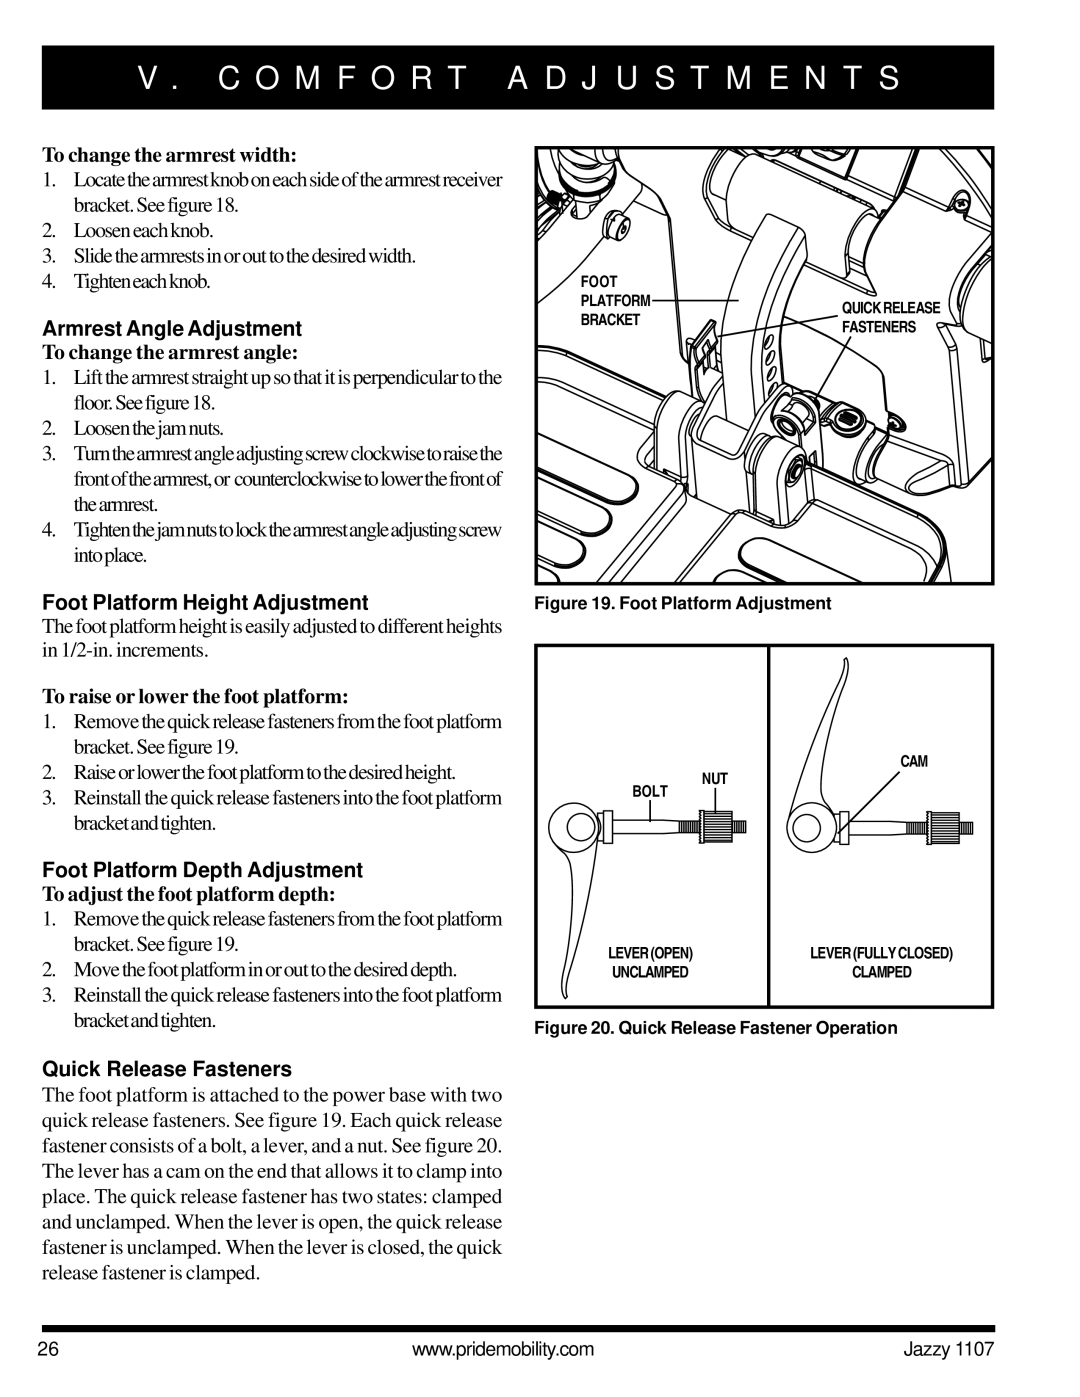 Pride Mobility 1107 owner manual Armrest Angle Adjustment, Foot Platform Height Adjustment, Foot Platform Depth Adjustment 